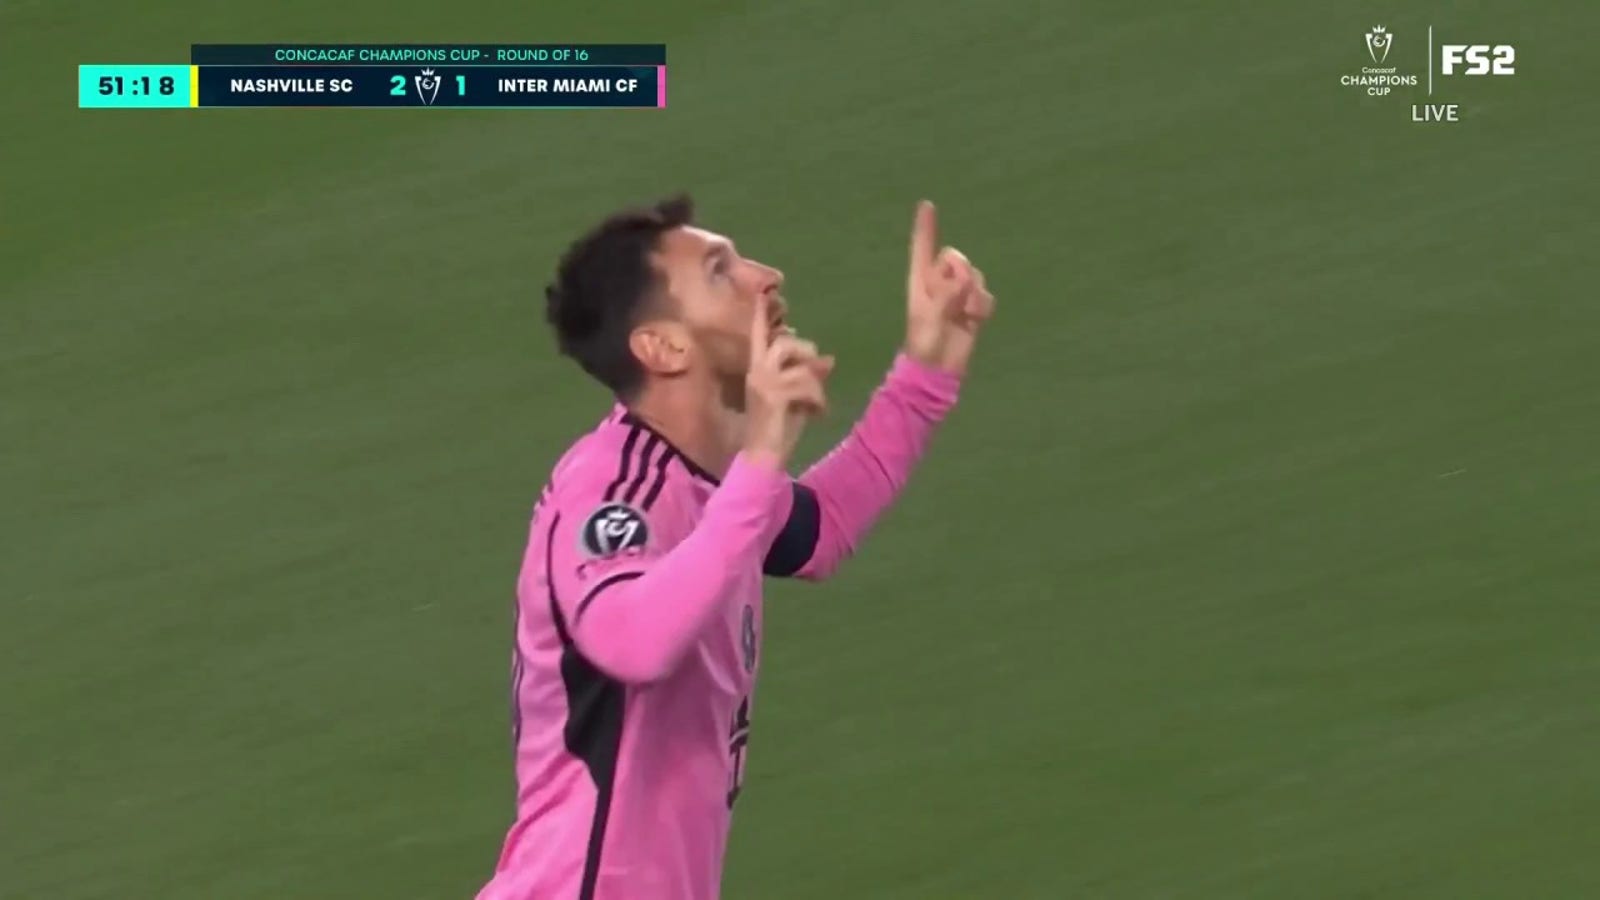 Lionel Messi scores a CLINCIAL goal against Nashville SC